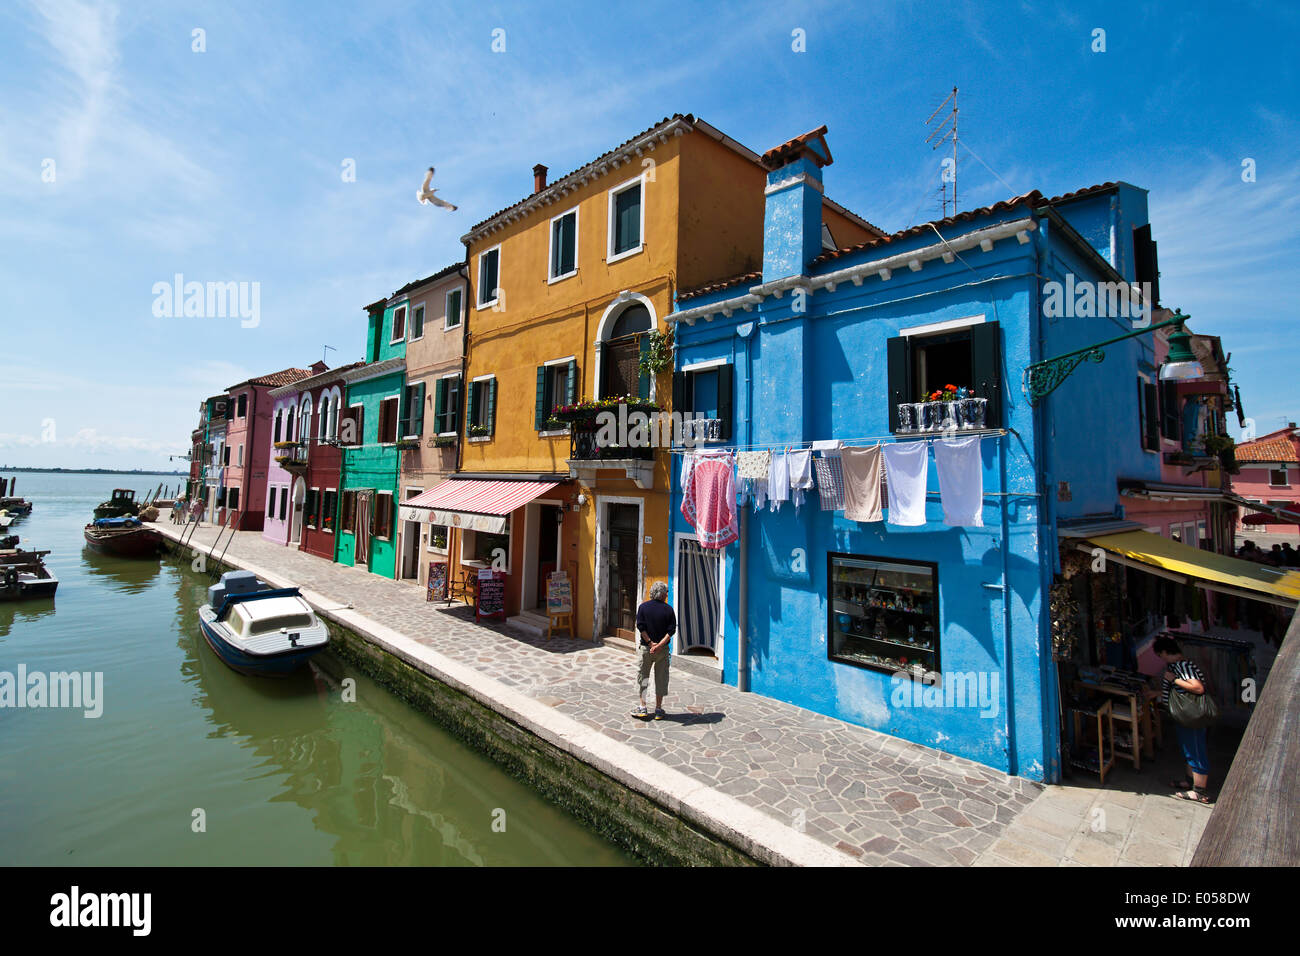 Die sehenswerte Stadt Venedig in Italien. Insel Burano, Die Sehenswerte Stadt Venedig in Italien. Insel Burano Stockfoto